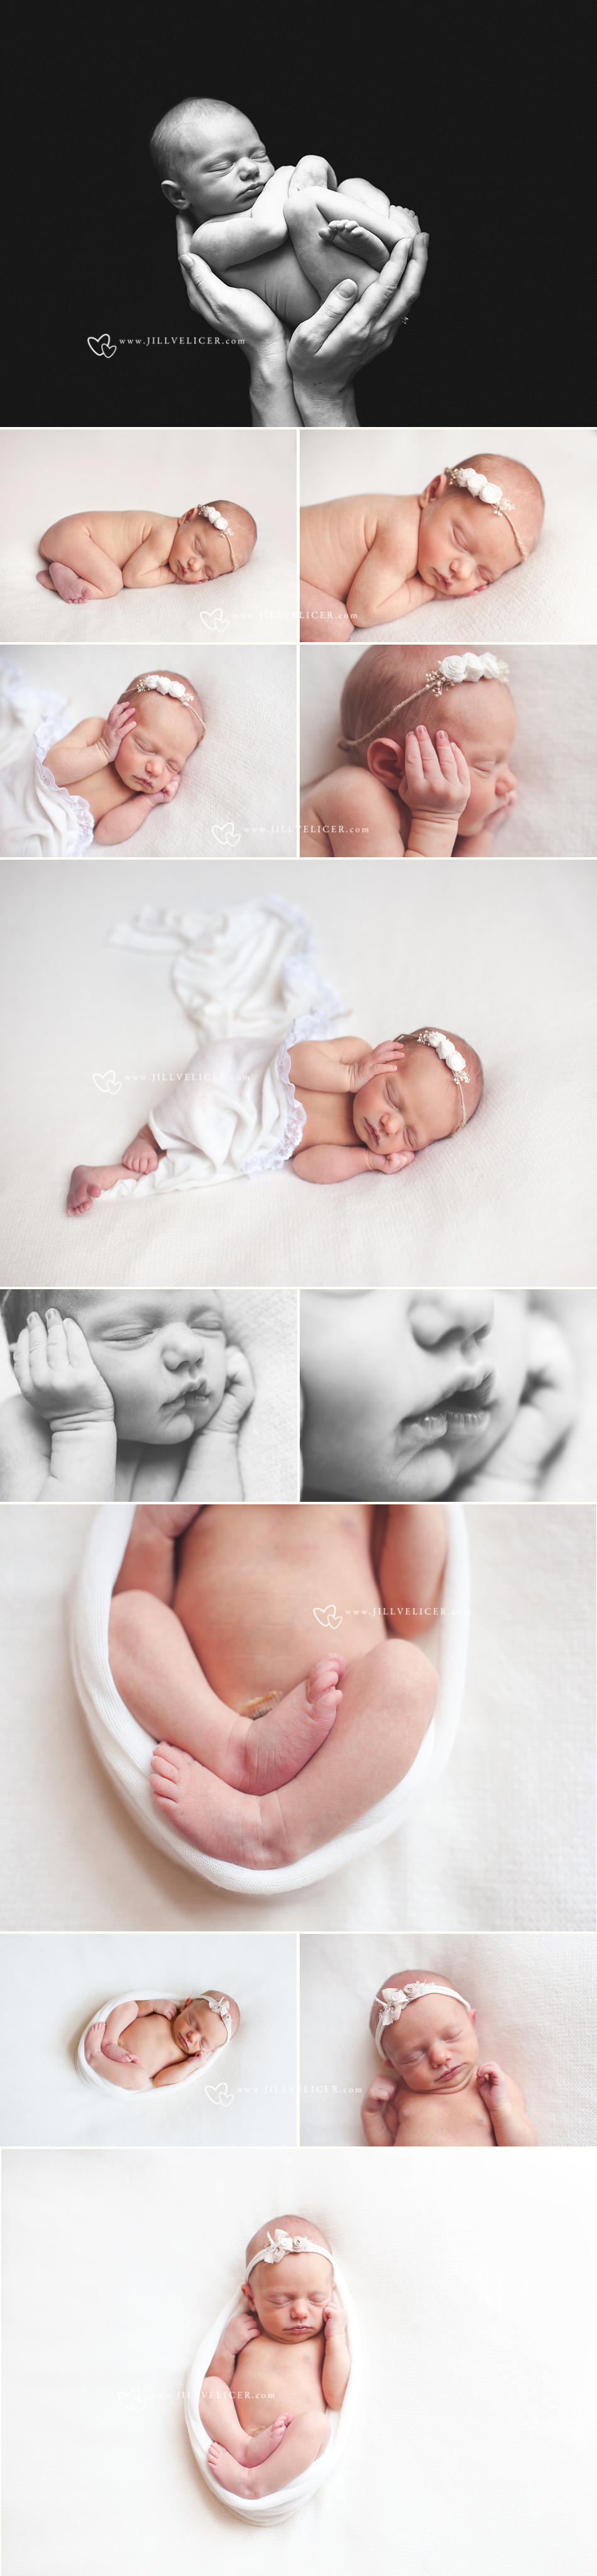 newborn girl photos simple natural photography